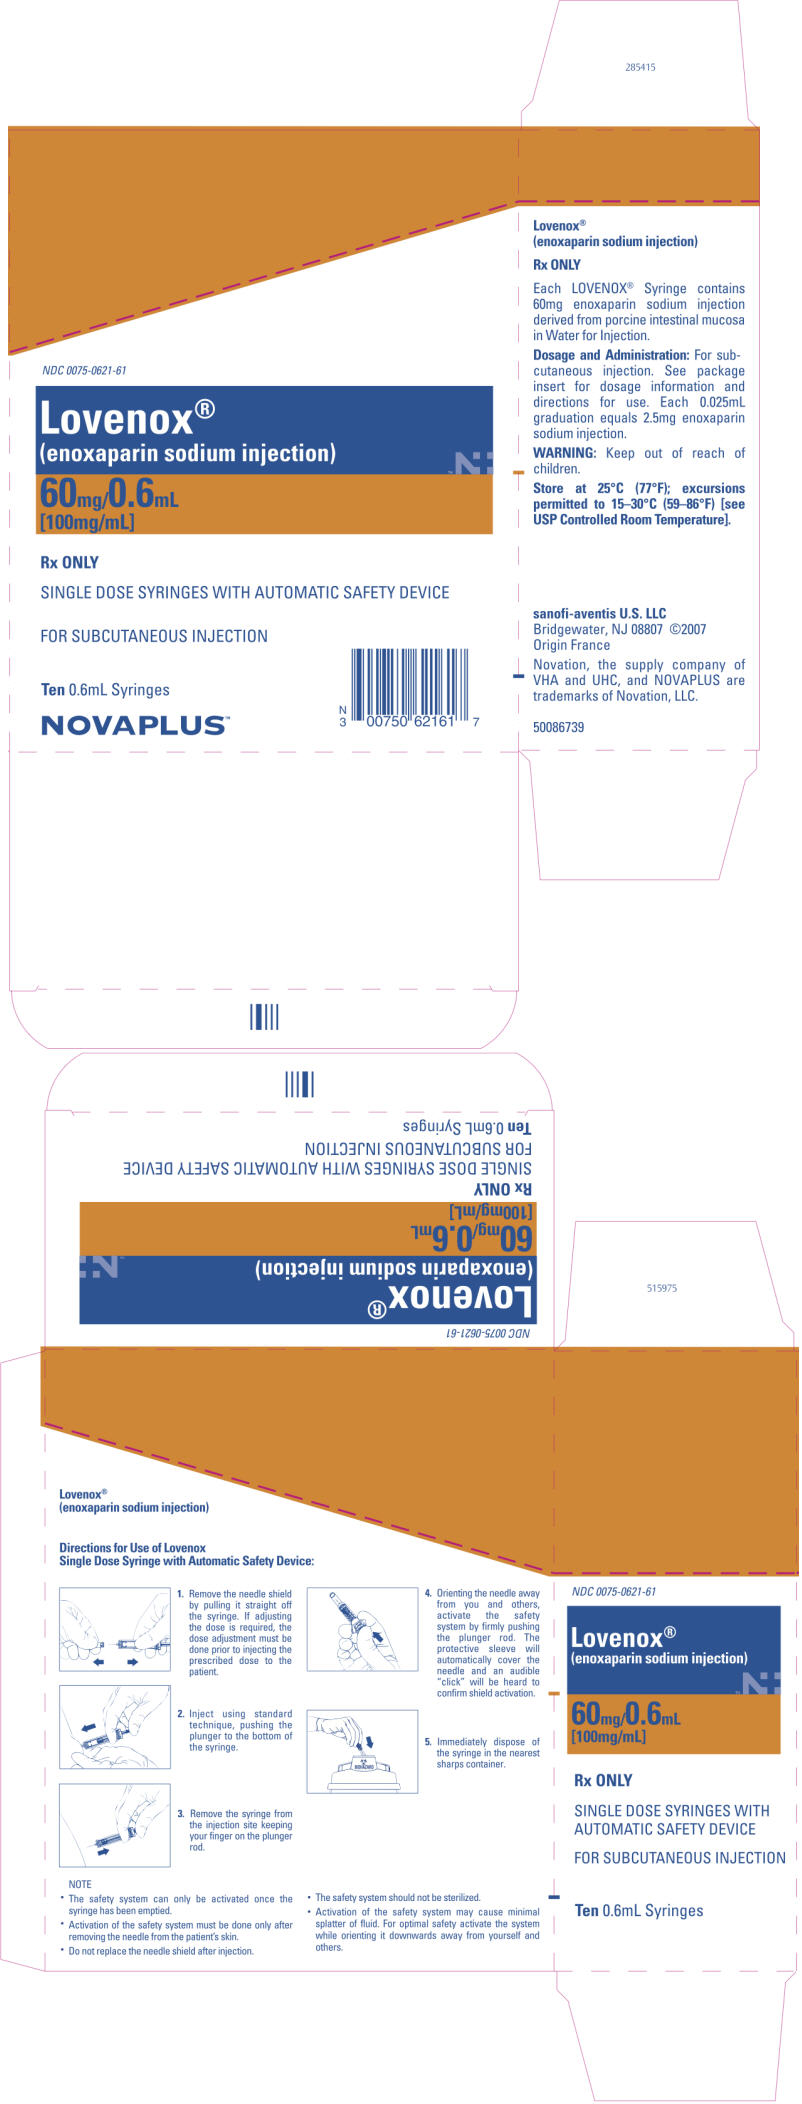 PRINCIPAL DISPLAY PANEL - 60mg/0.6mL Carton